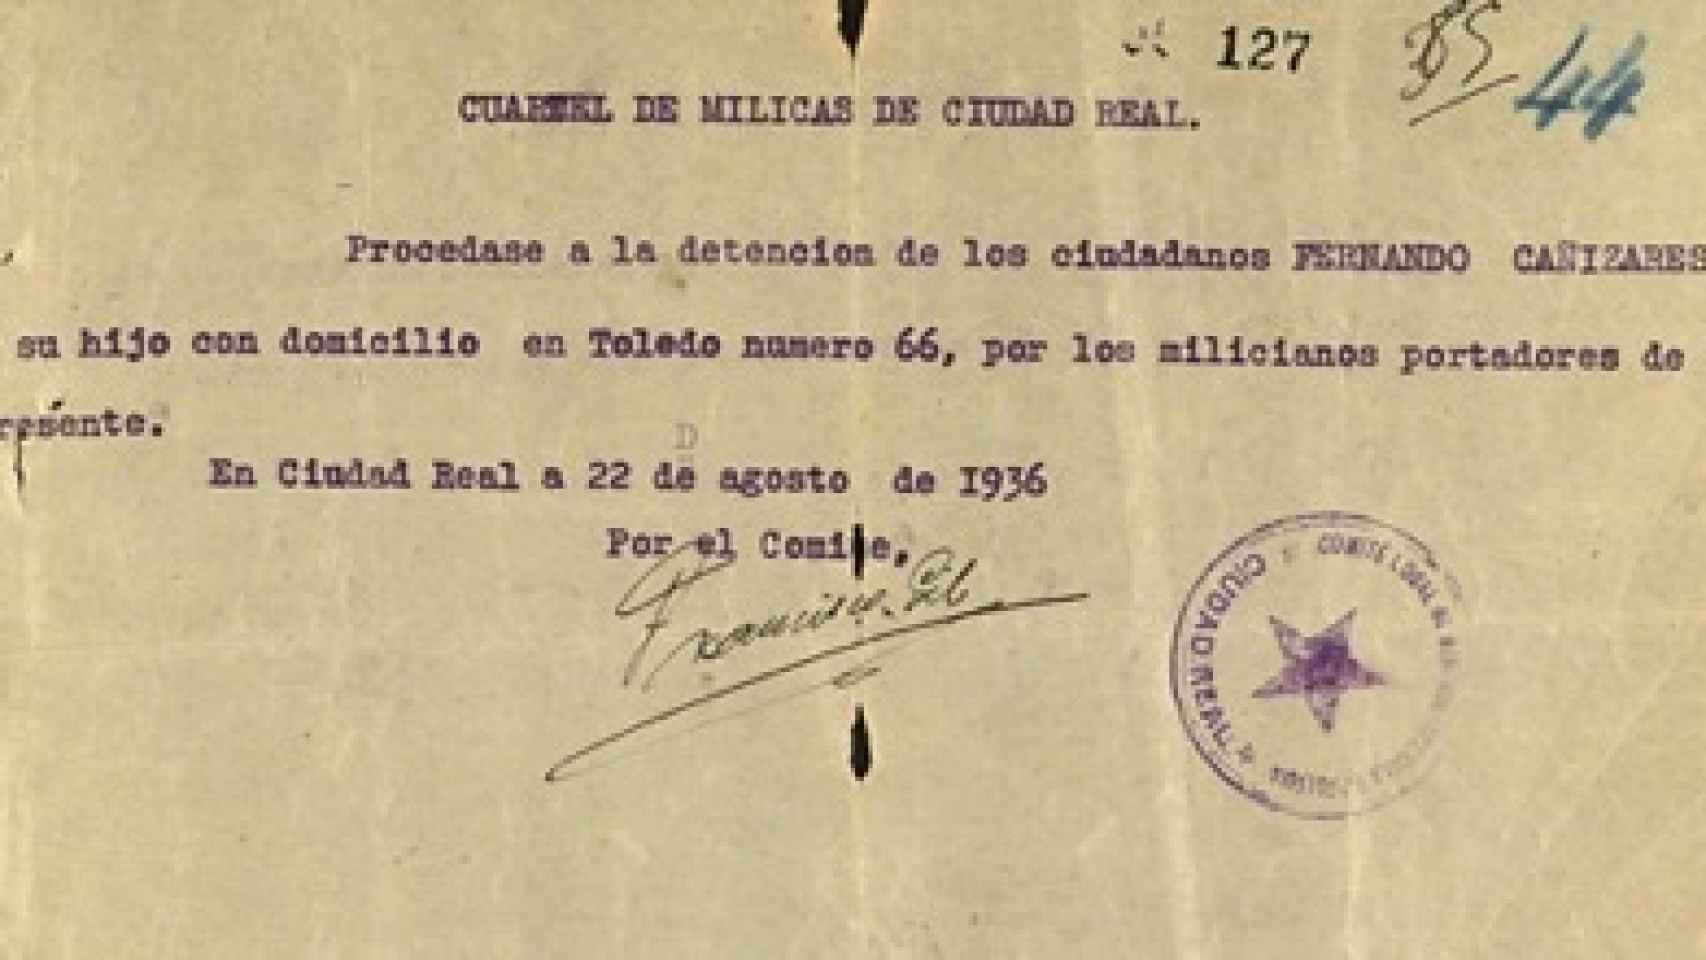 Una orden de detención, emitida por el Cuartel de Milicias de Ciudad Real.